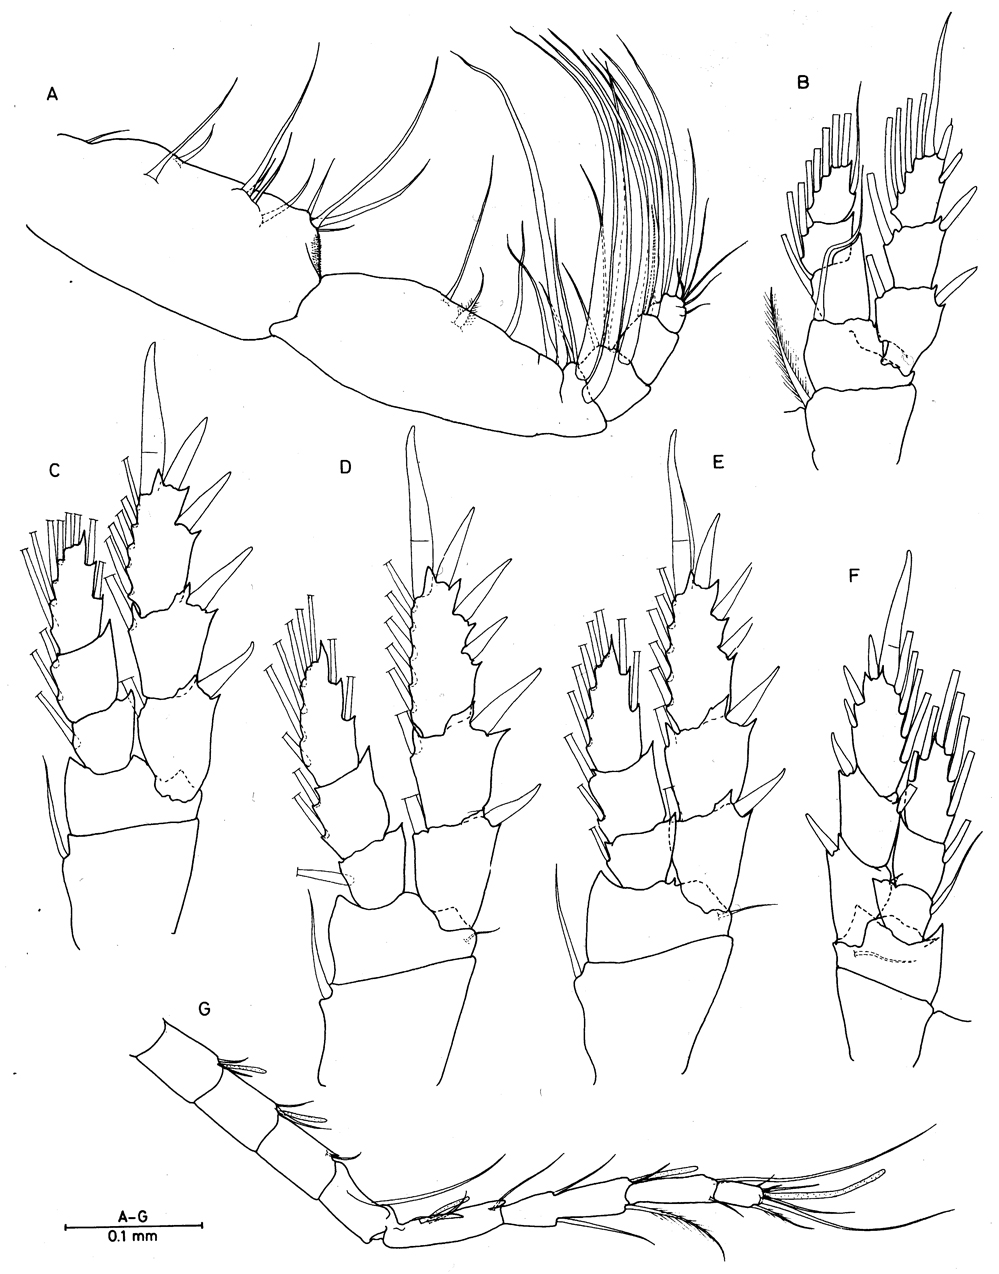 Espèce Enantiosis bermudensis - Planche 2 de figures morphologiques